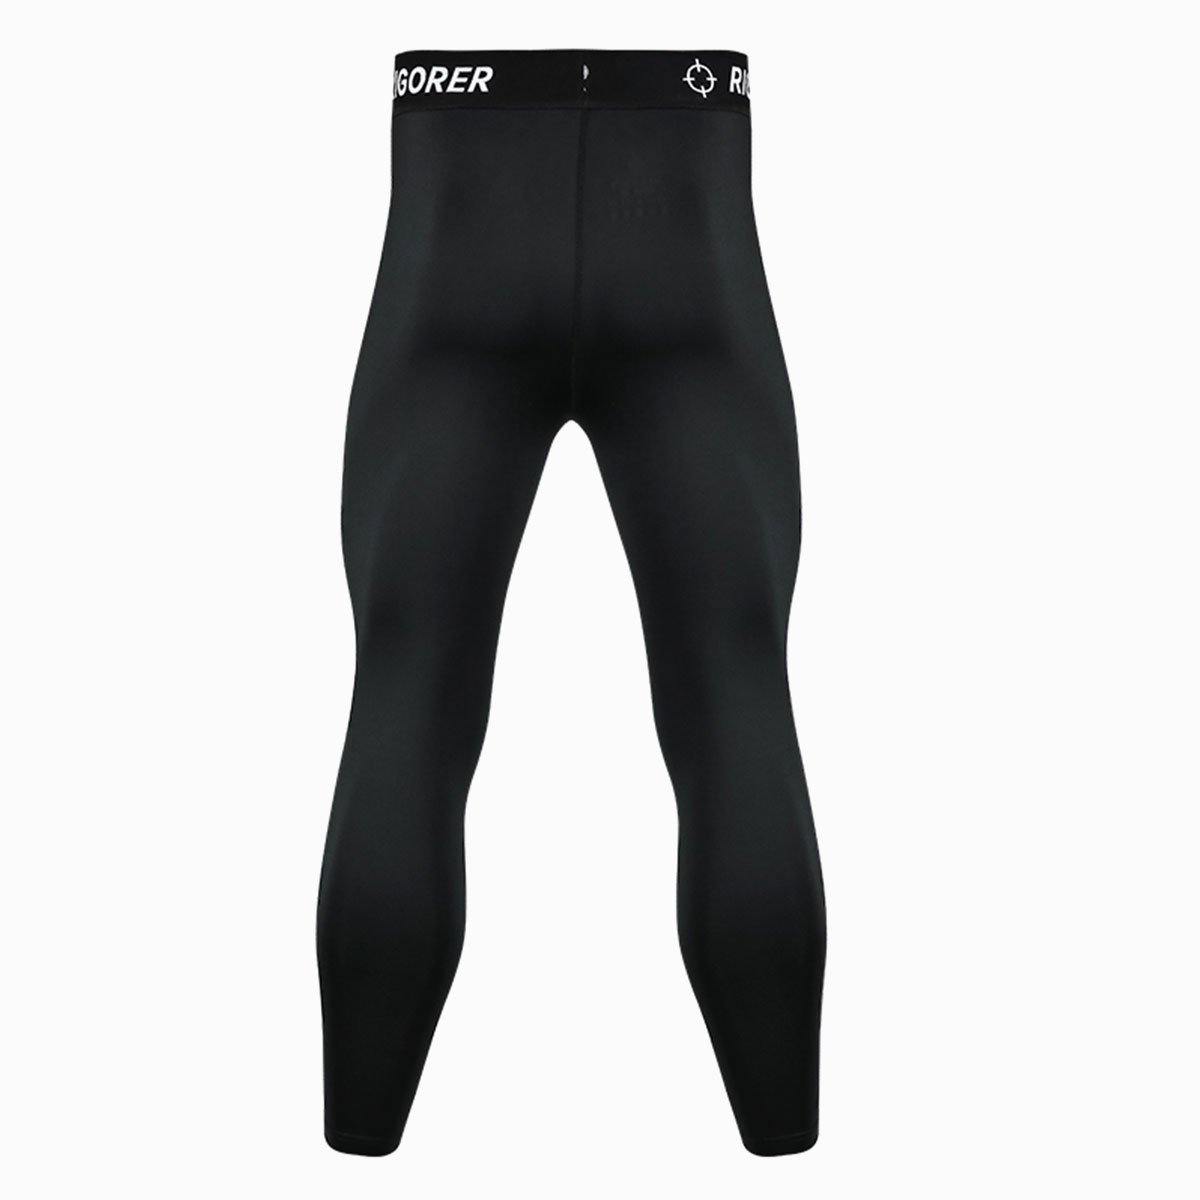 Black Color Plus fleece Breadthable Active Wear Men's Compression Pants - Rigorer Official Flagship Store